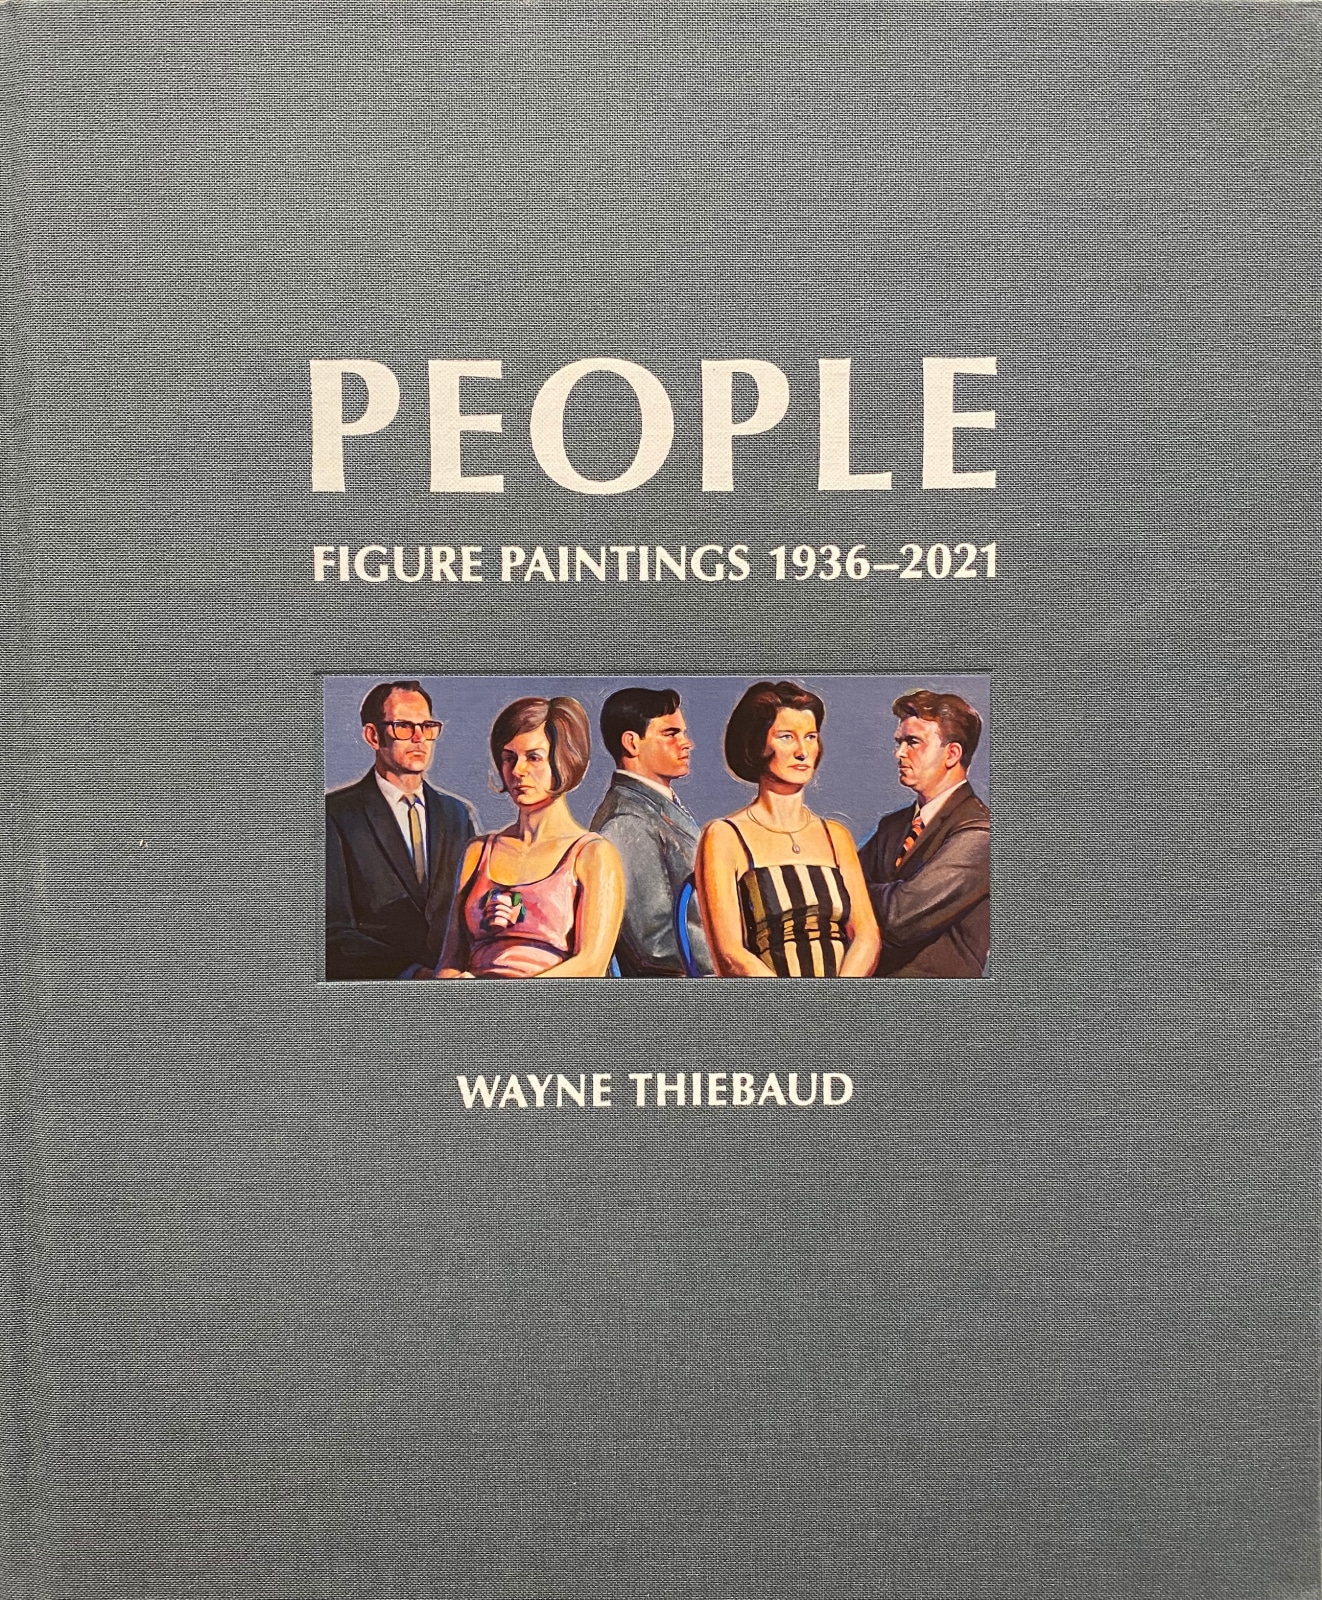 Wayne Thiebaud: People - Figure Paintings 1936-2021 - Publications - Paul Thiebaud Gallery